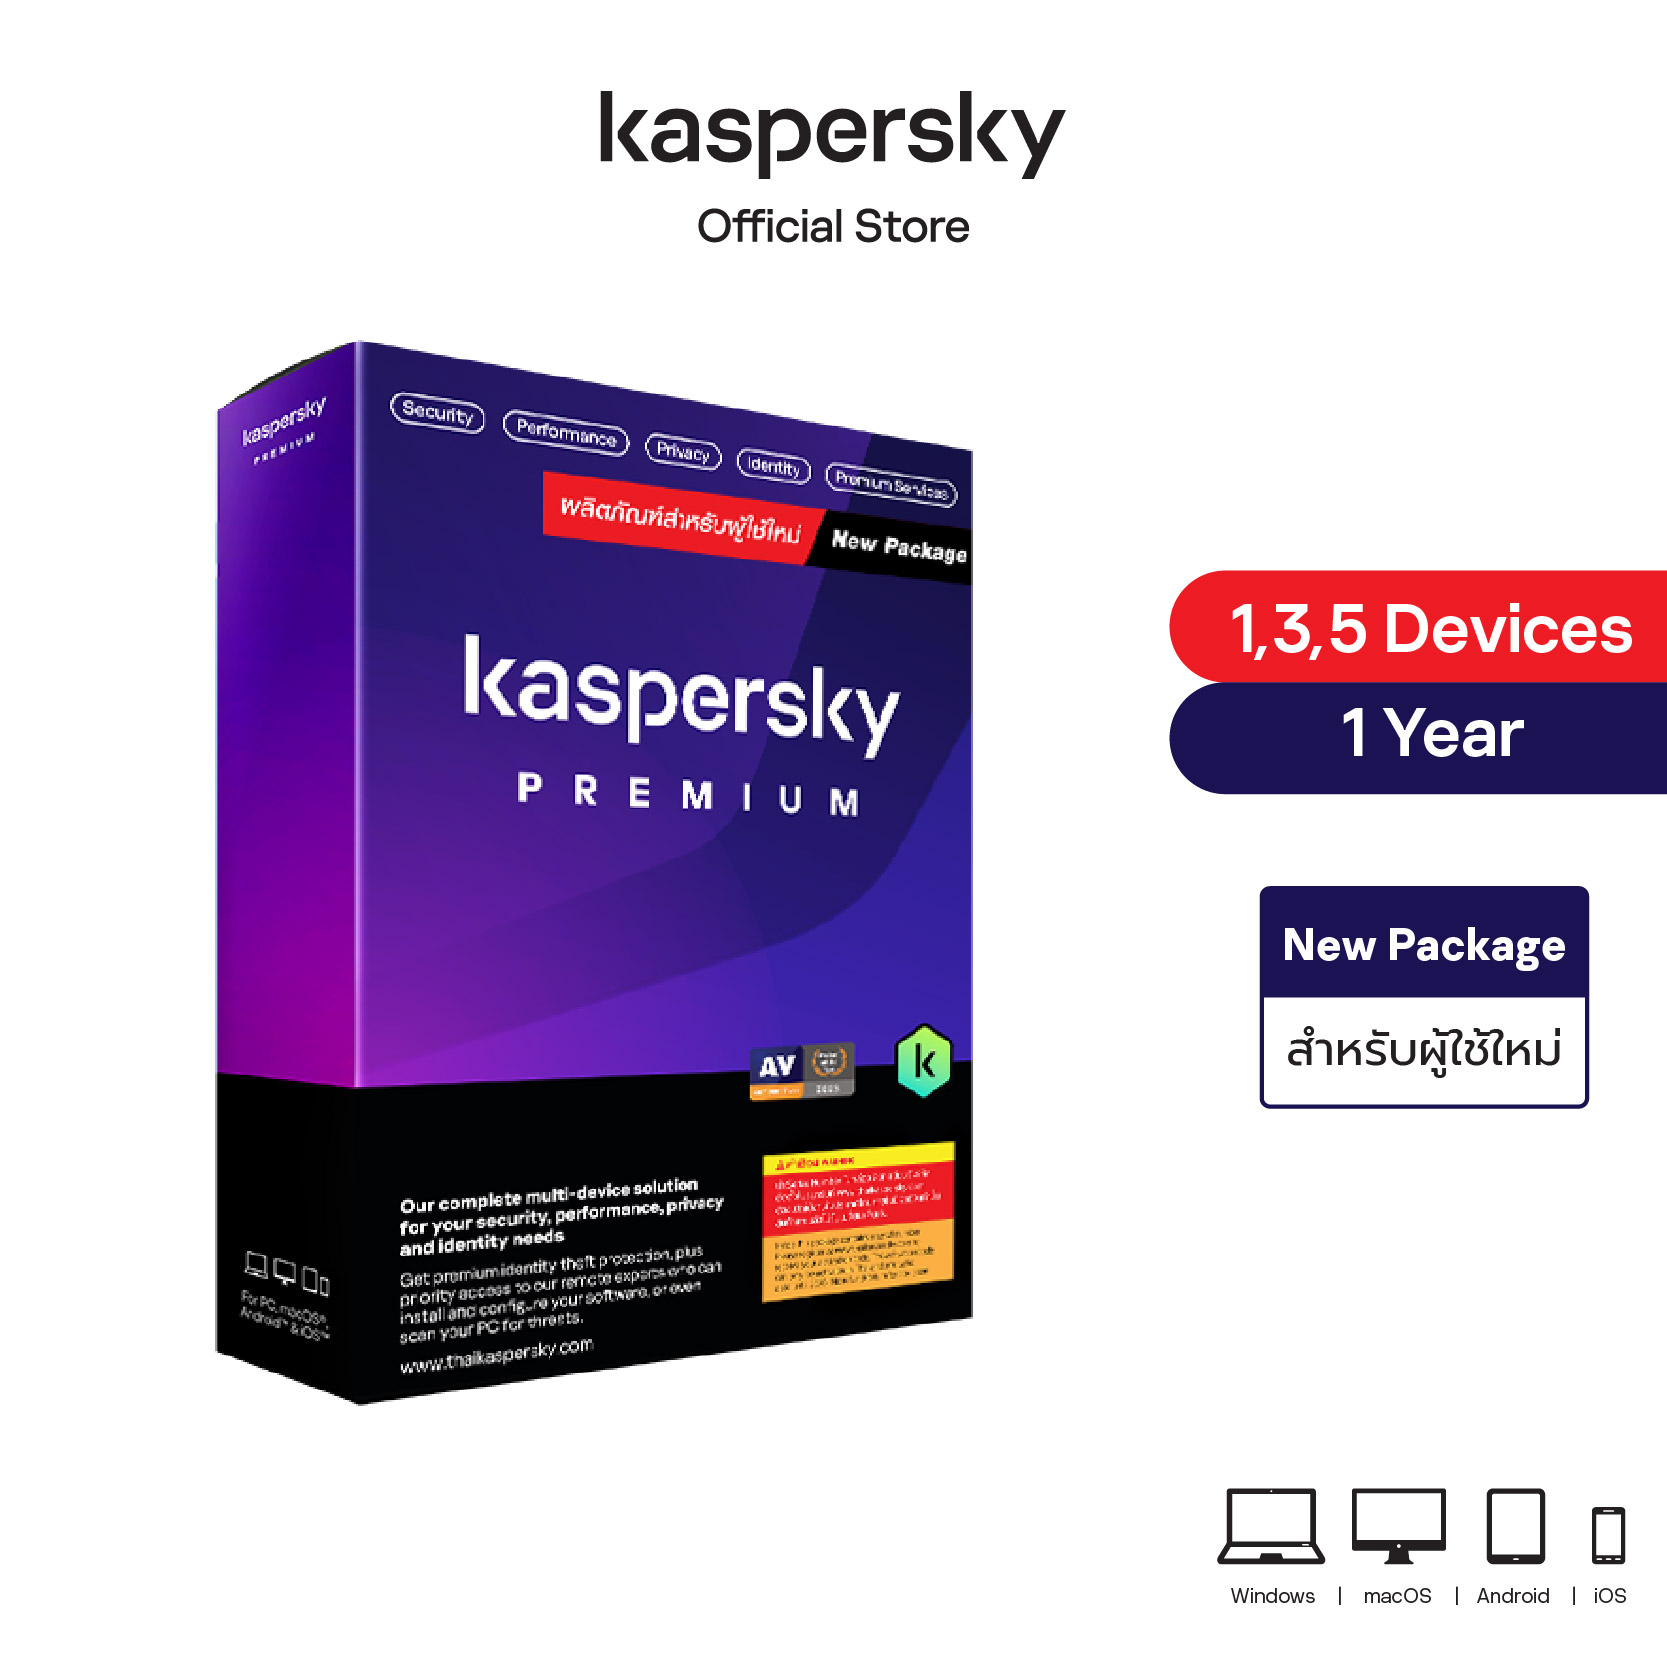 Kaspersky Premium (New Package)